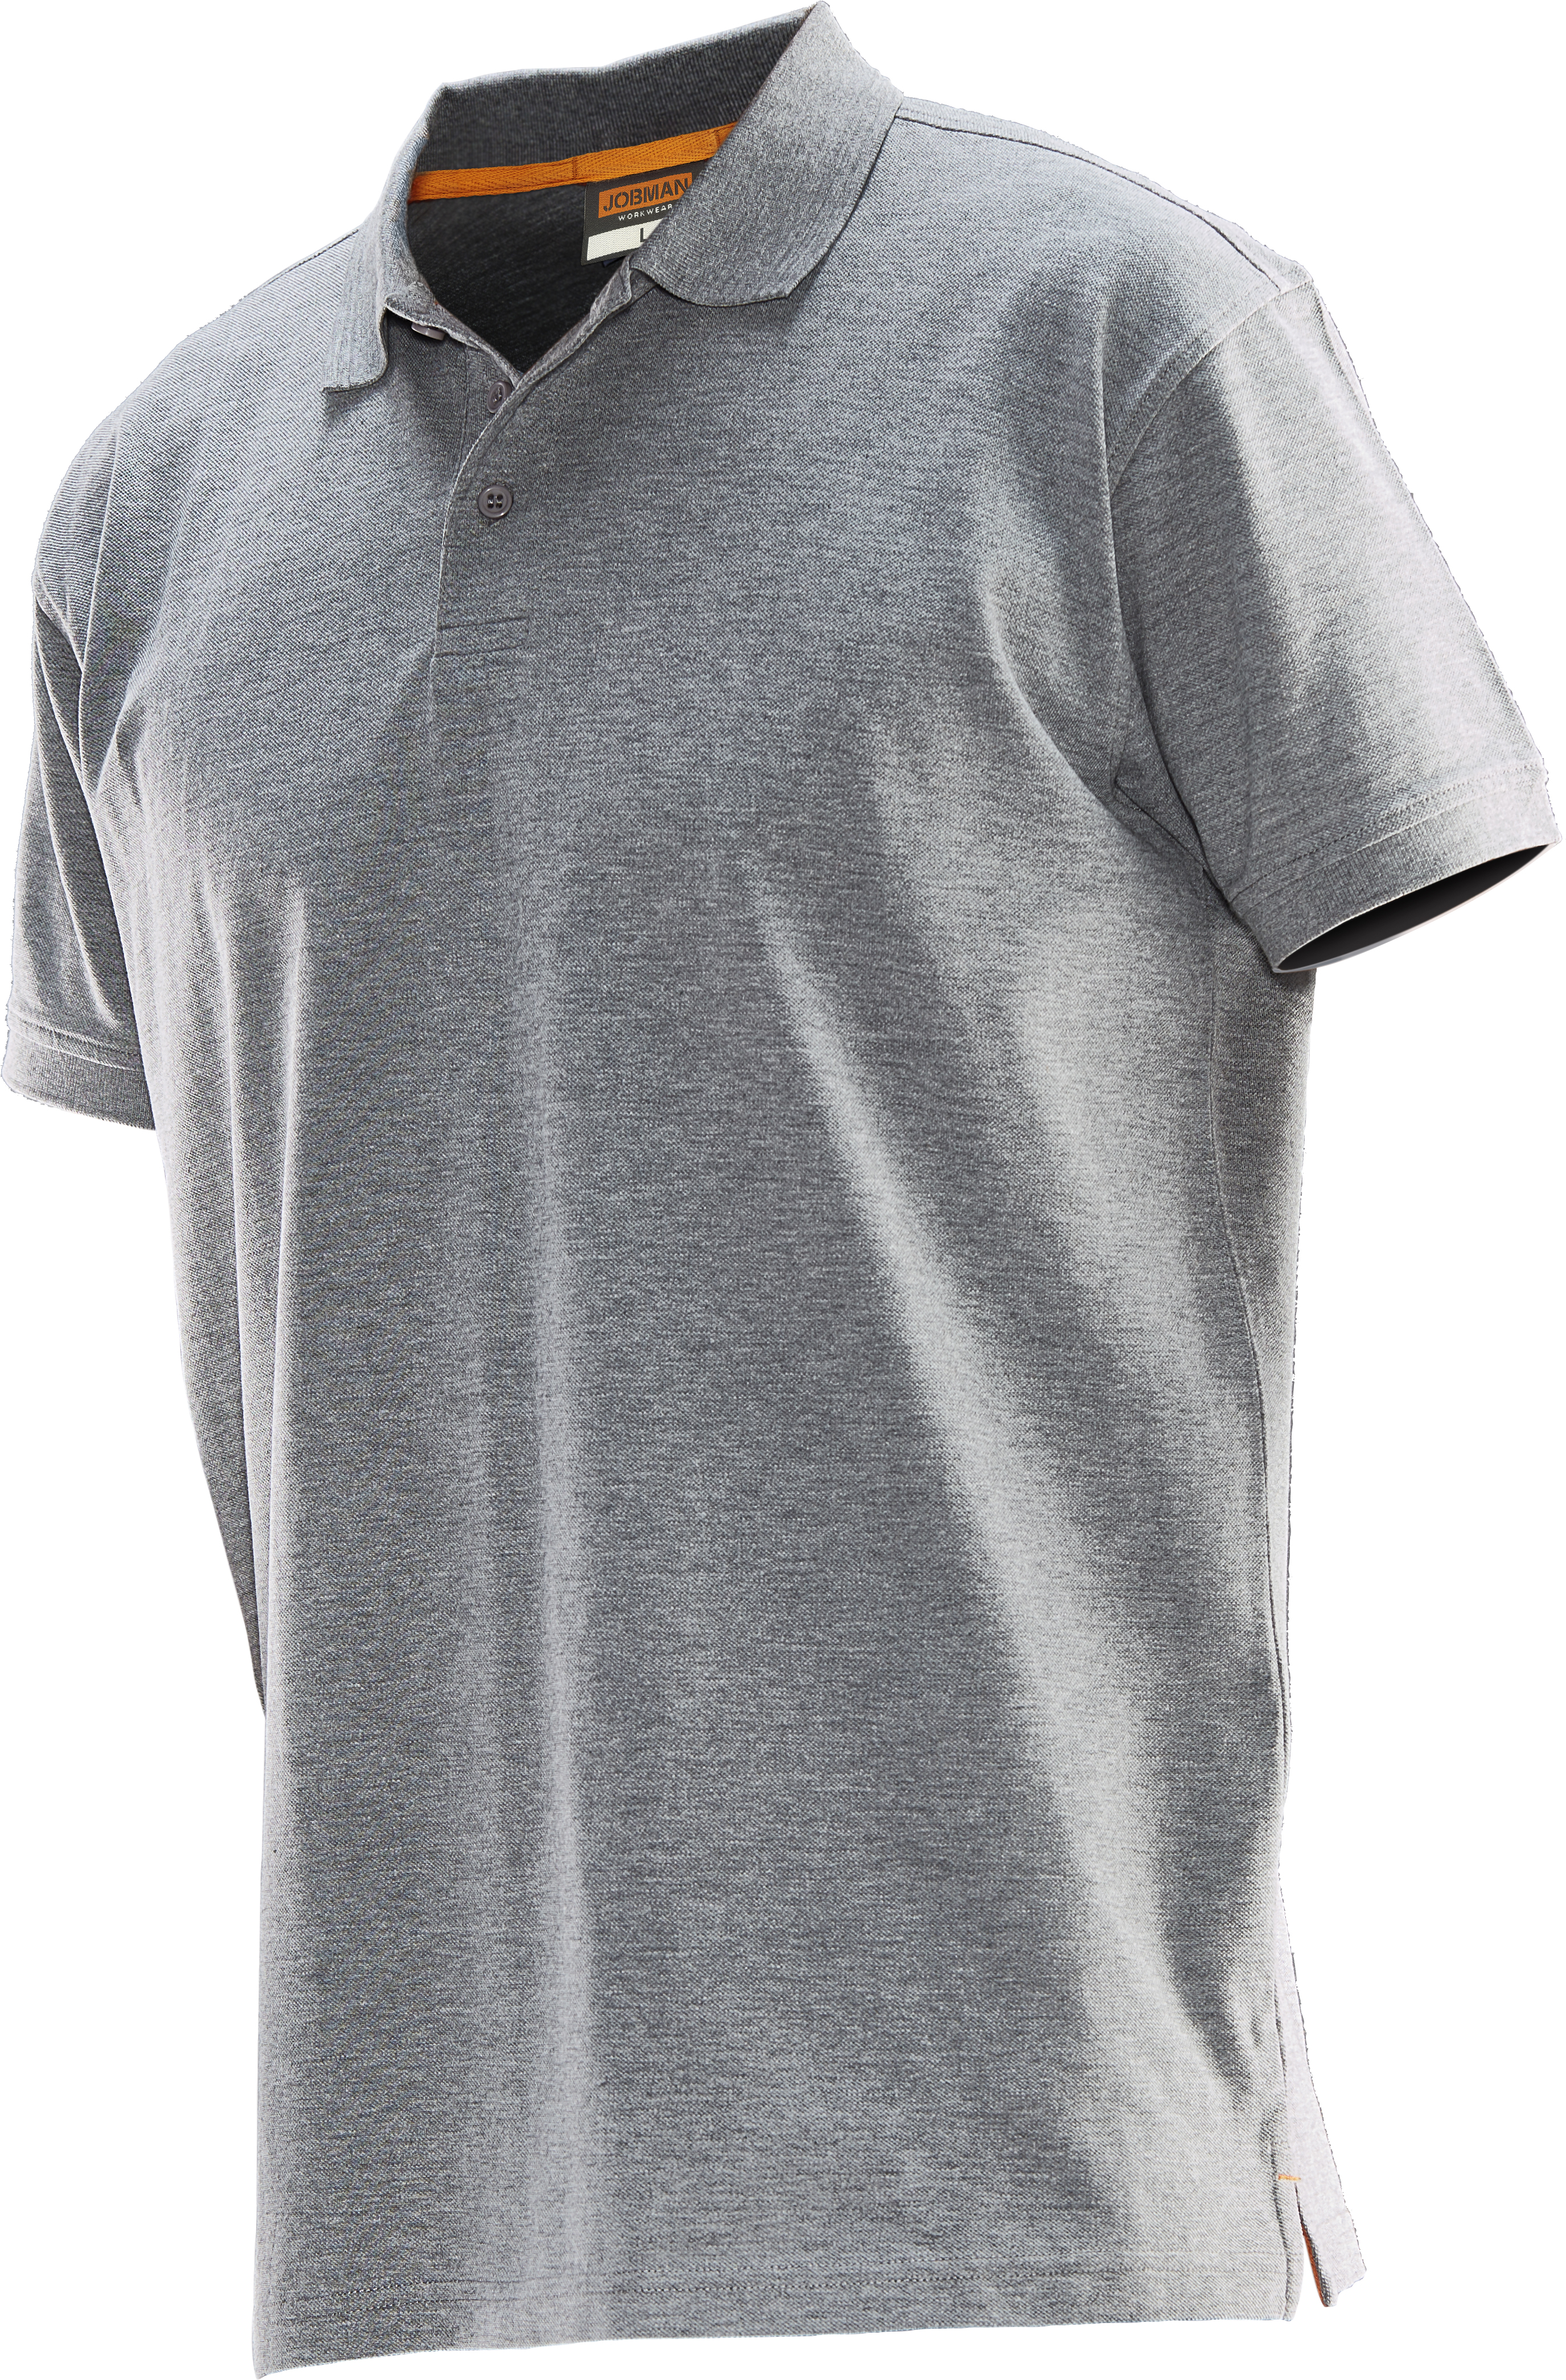 5564 T-shirt polo L gris chiné